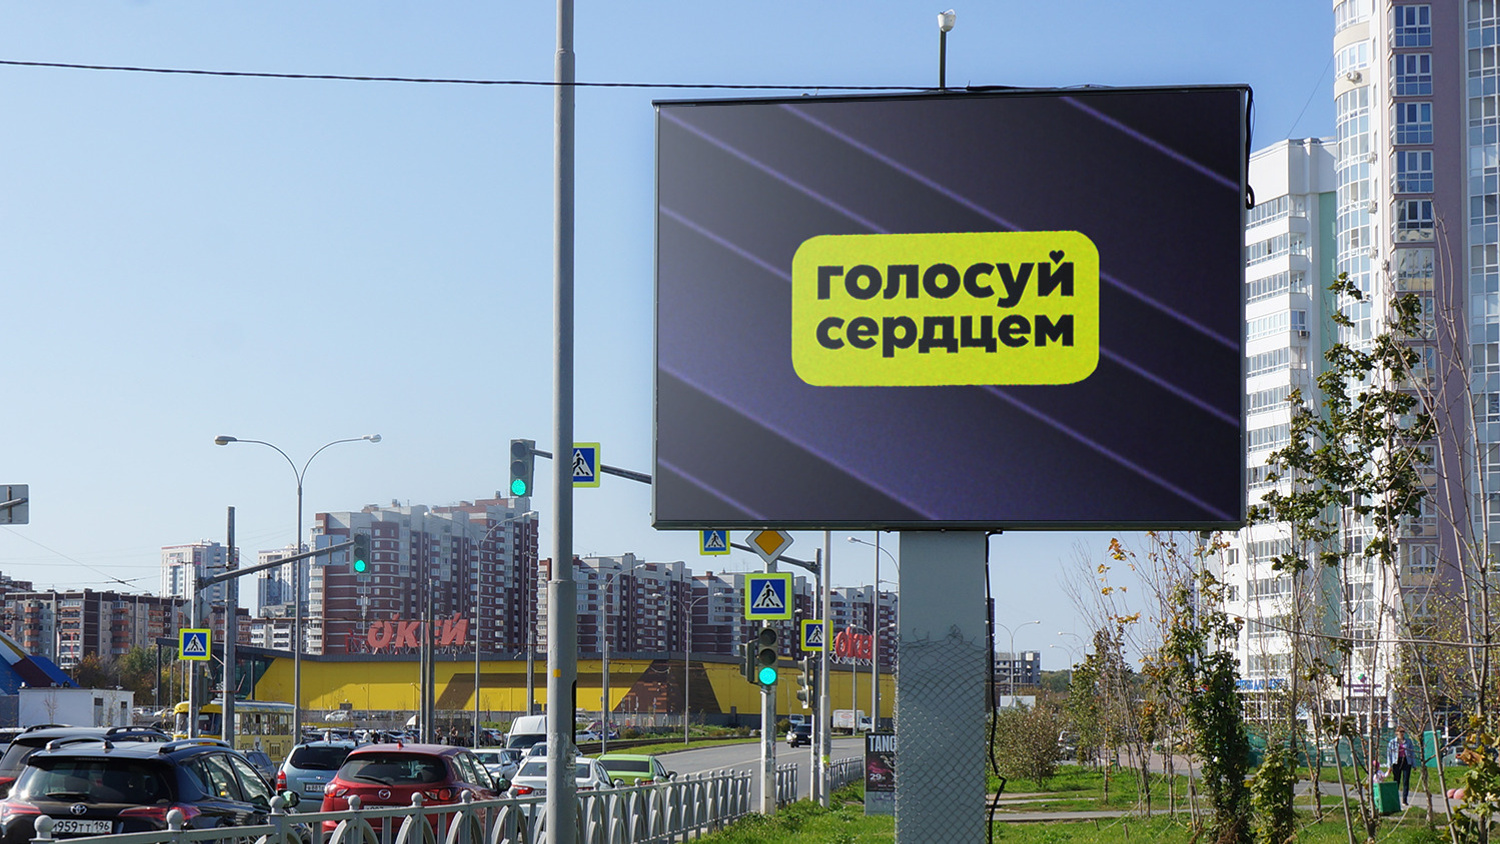 «Голосуй сердцем»: что за баннеры развесили по Екатеринбургу и за кого они агитируют